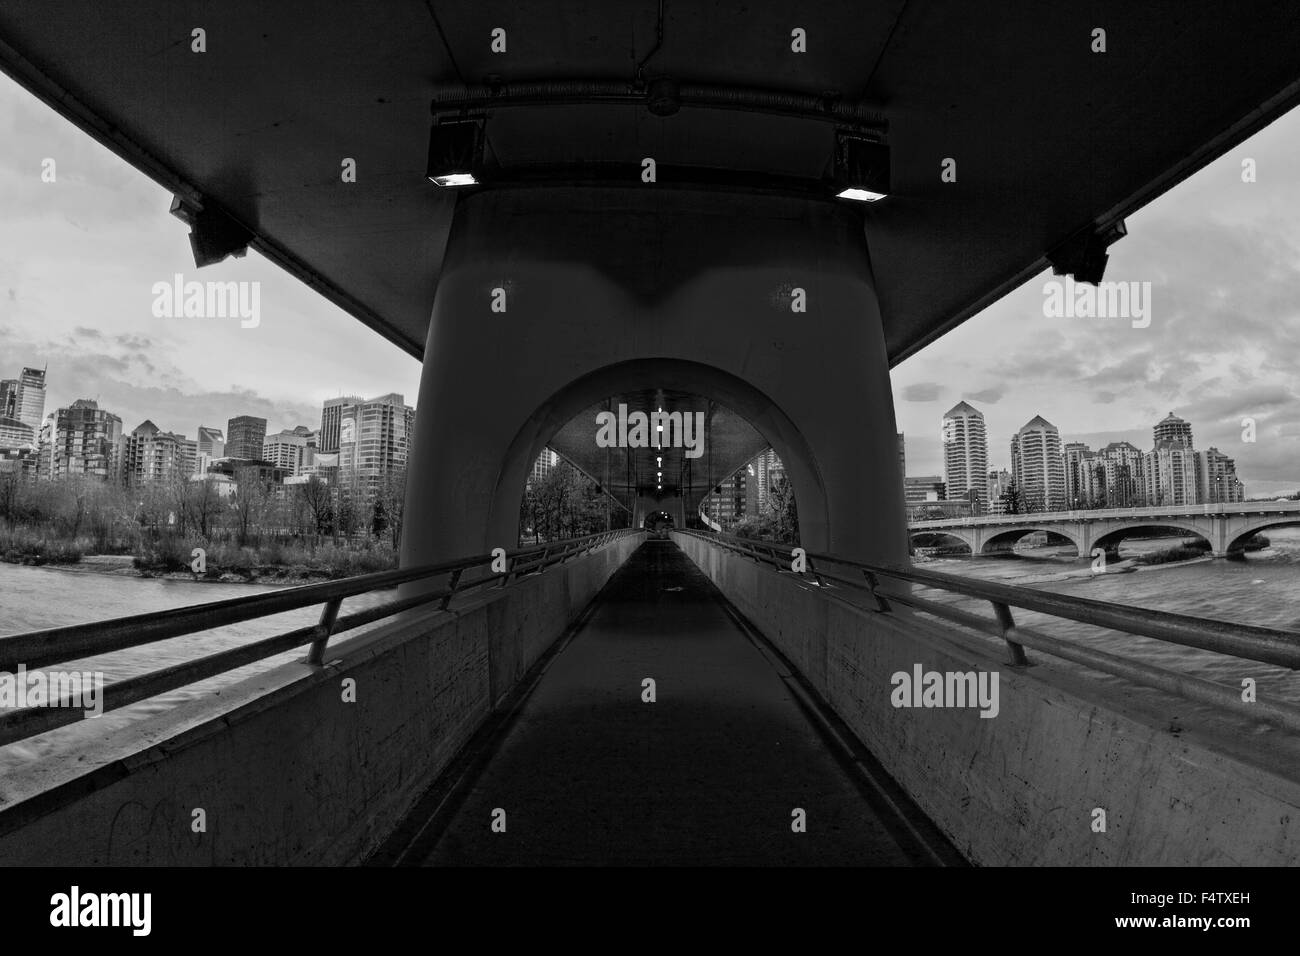 Sunnyside C-Train Bridge Unterdeck Fußgängerbrücke in die Innenstadt von Calgary Alberta Kanada, urban City Center im Hintergrund Stockfoto